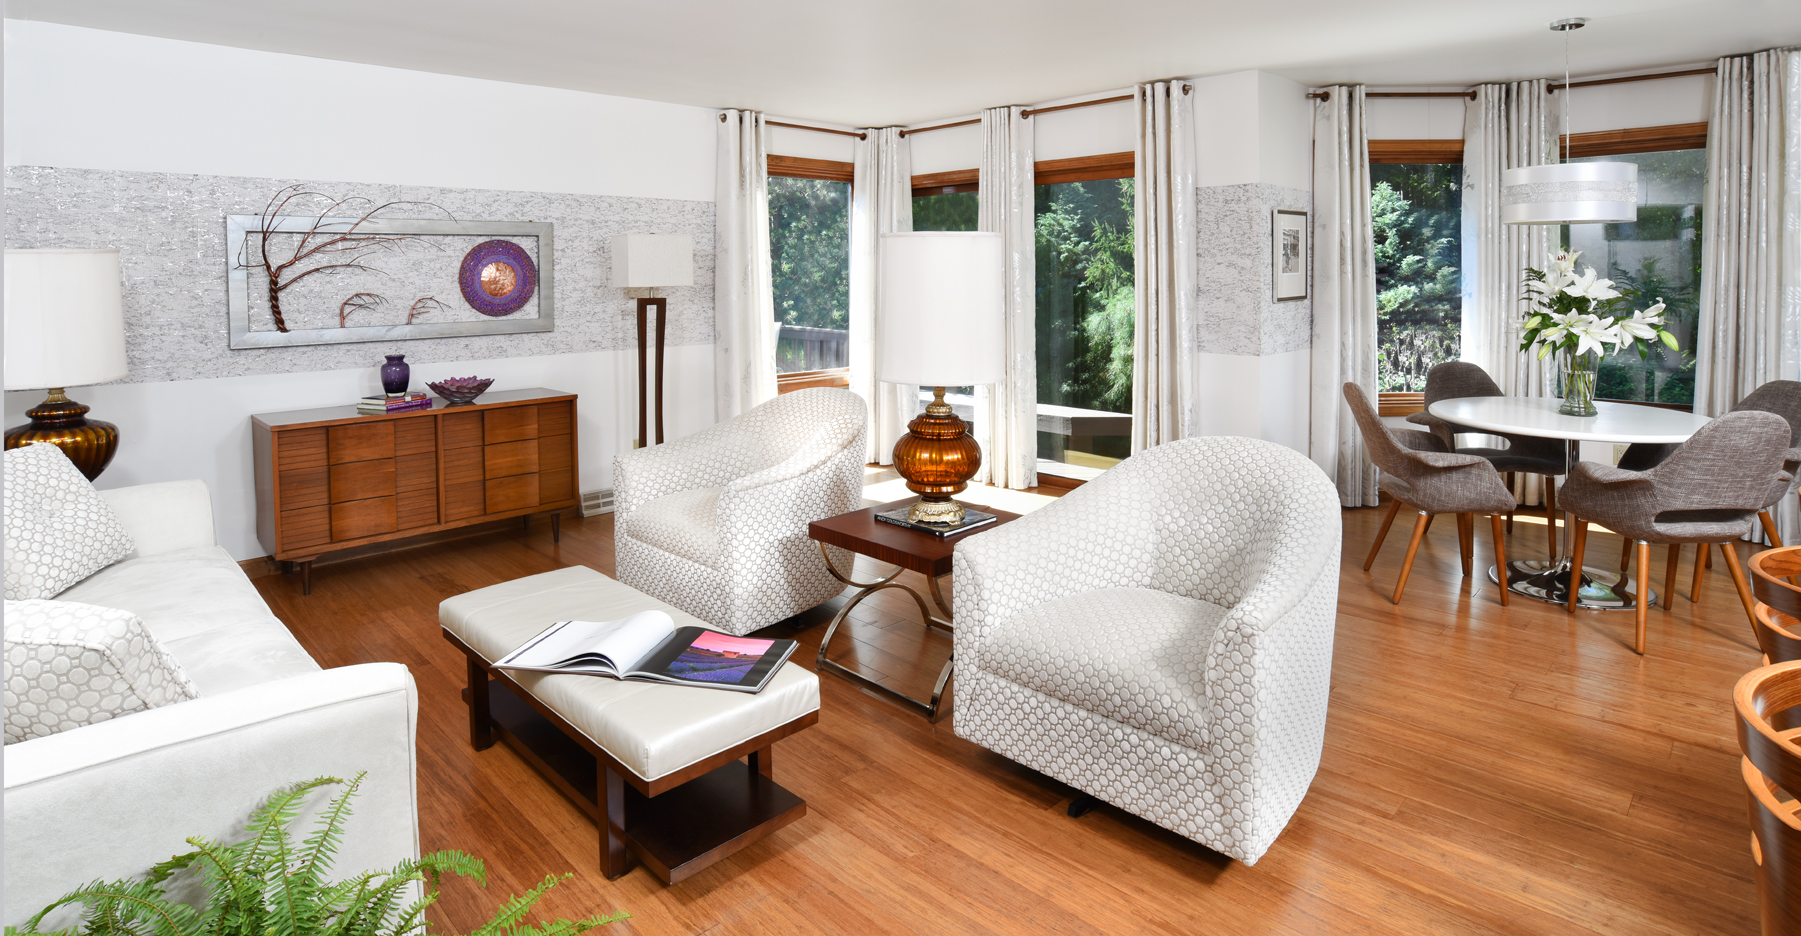 Living Room design by Gina Paris